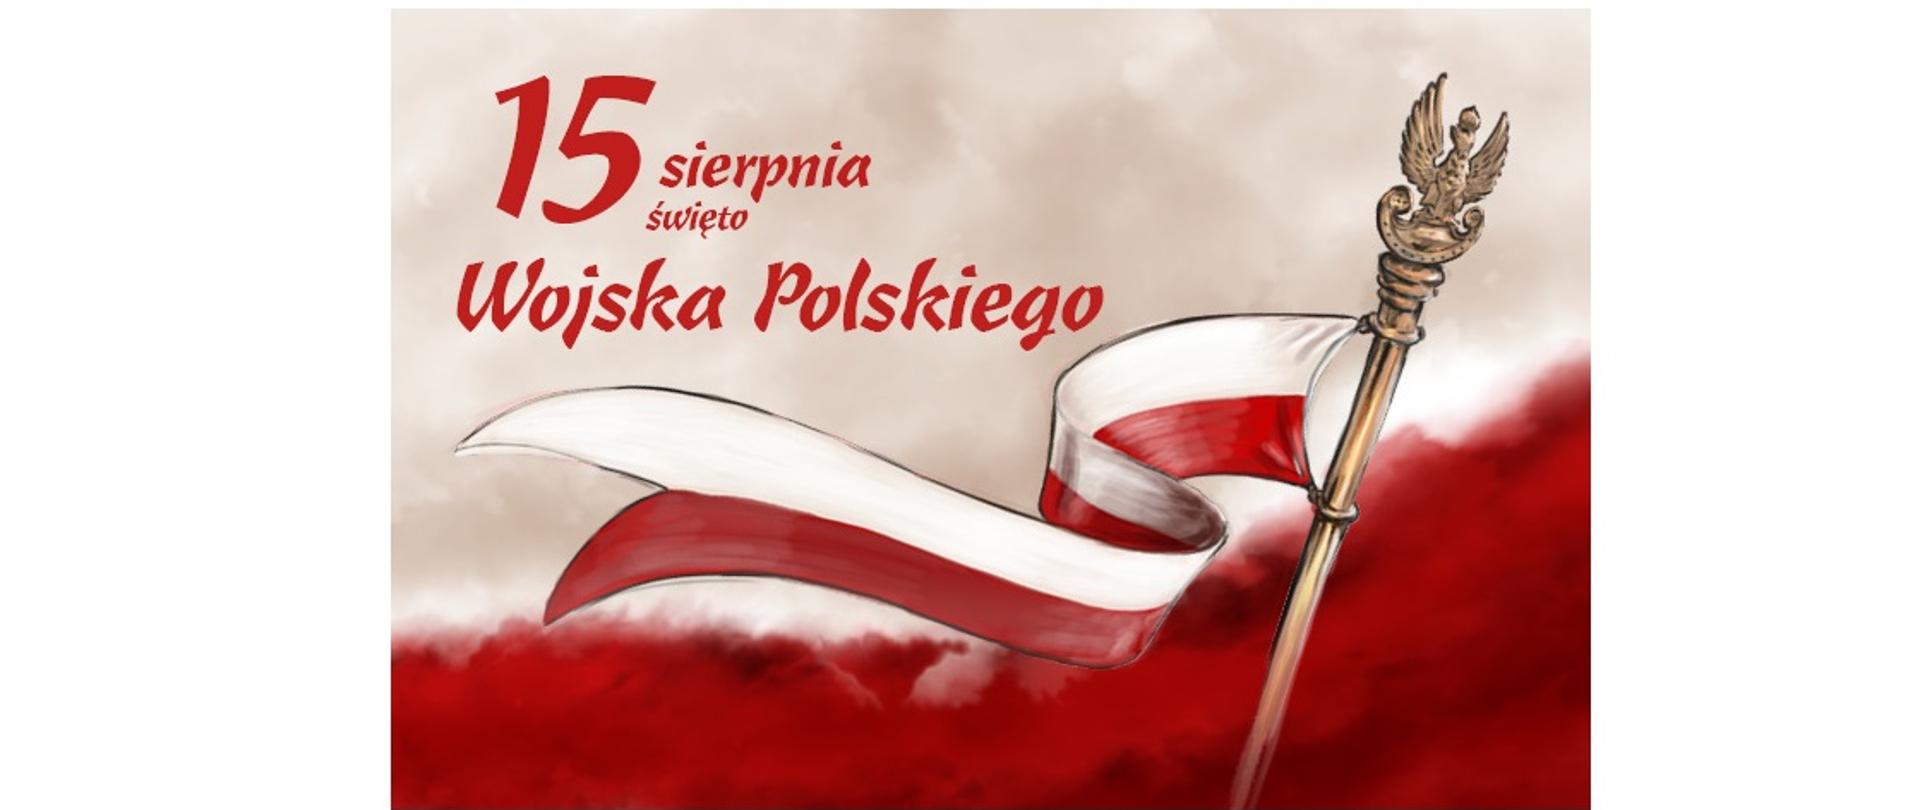 Plakat z okazji Święta Wojska Polskiego pobrany ze strony internetowej https://gifyagusi.pl/obrazek/swieto-wojska-polskiego/flaga-polski-na-sztandar-15-sierpnia/